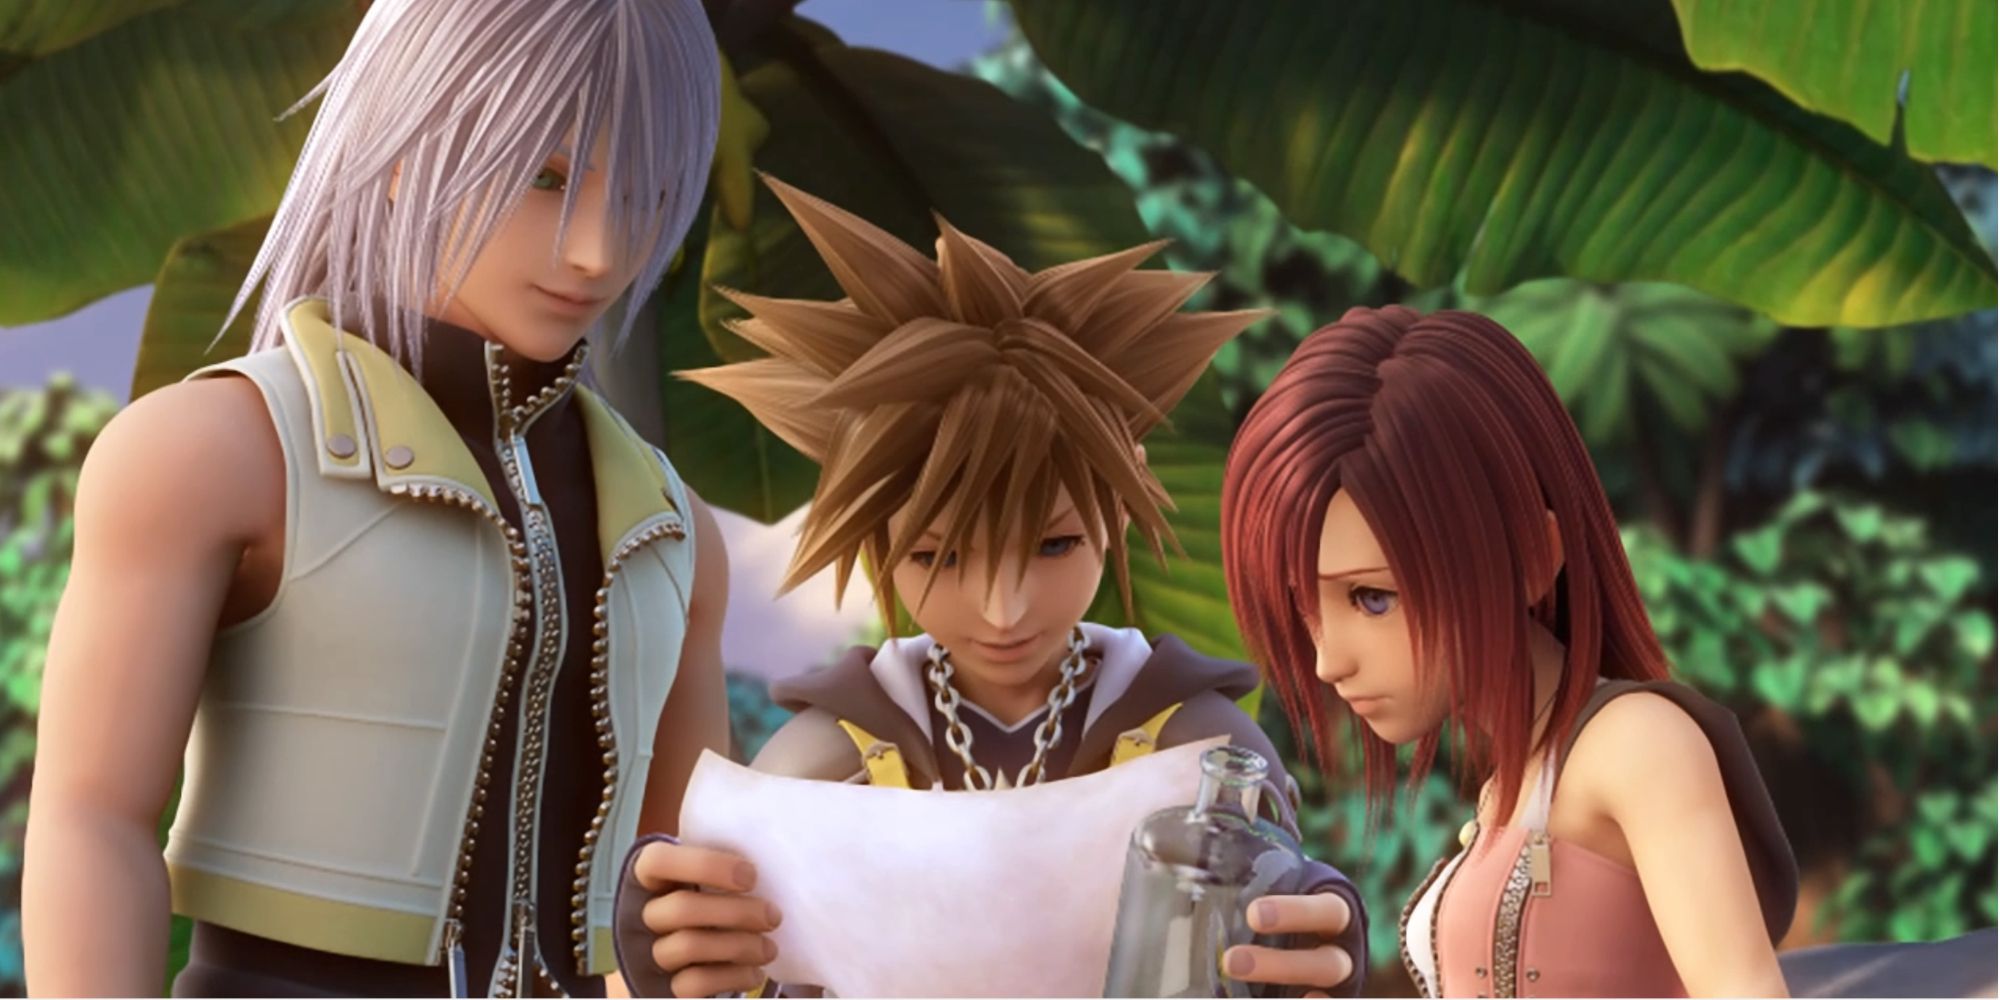 Riku, Sora, and Kairi in Kingdom Hearts